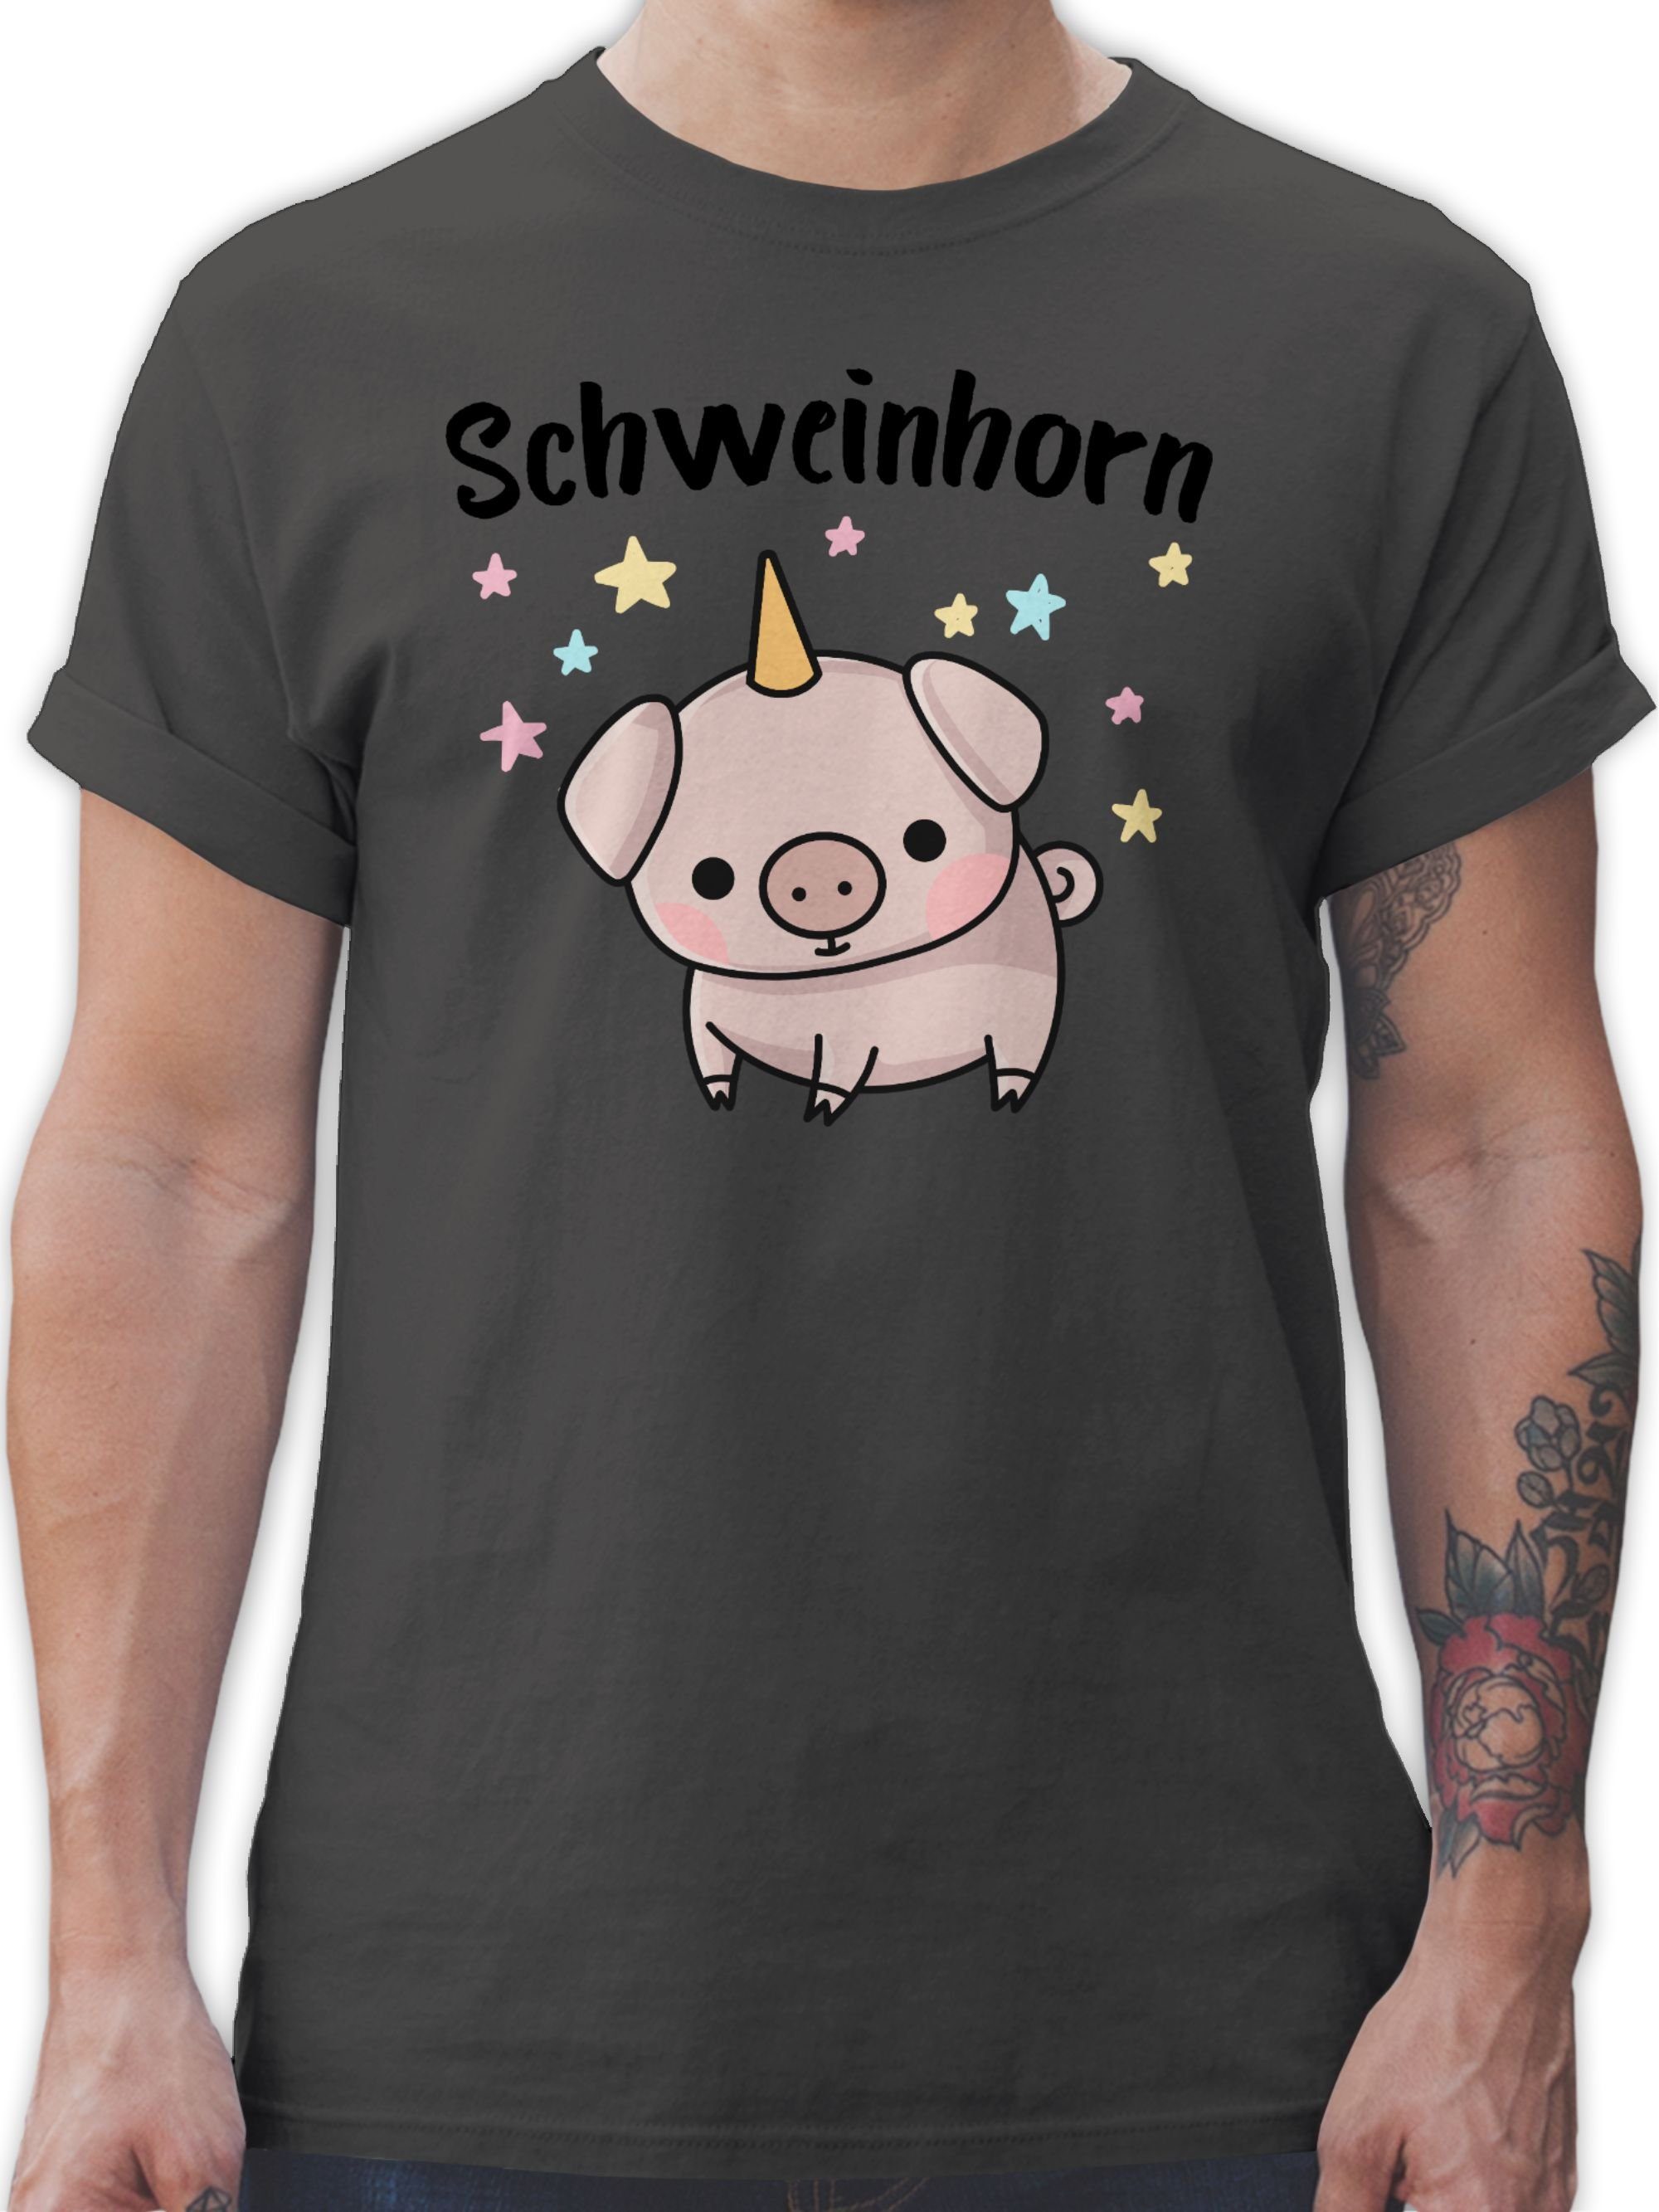 Shirtracer T-Shirt Schweinhorn Karneval Outfit 1 Dunkelgrau